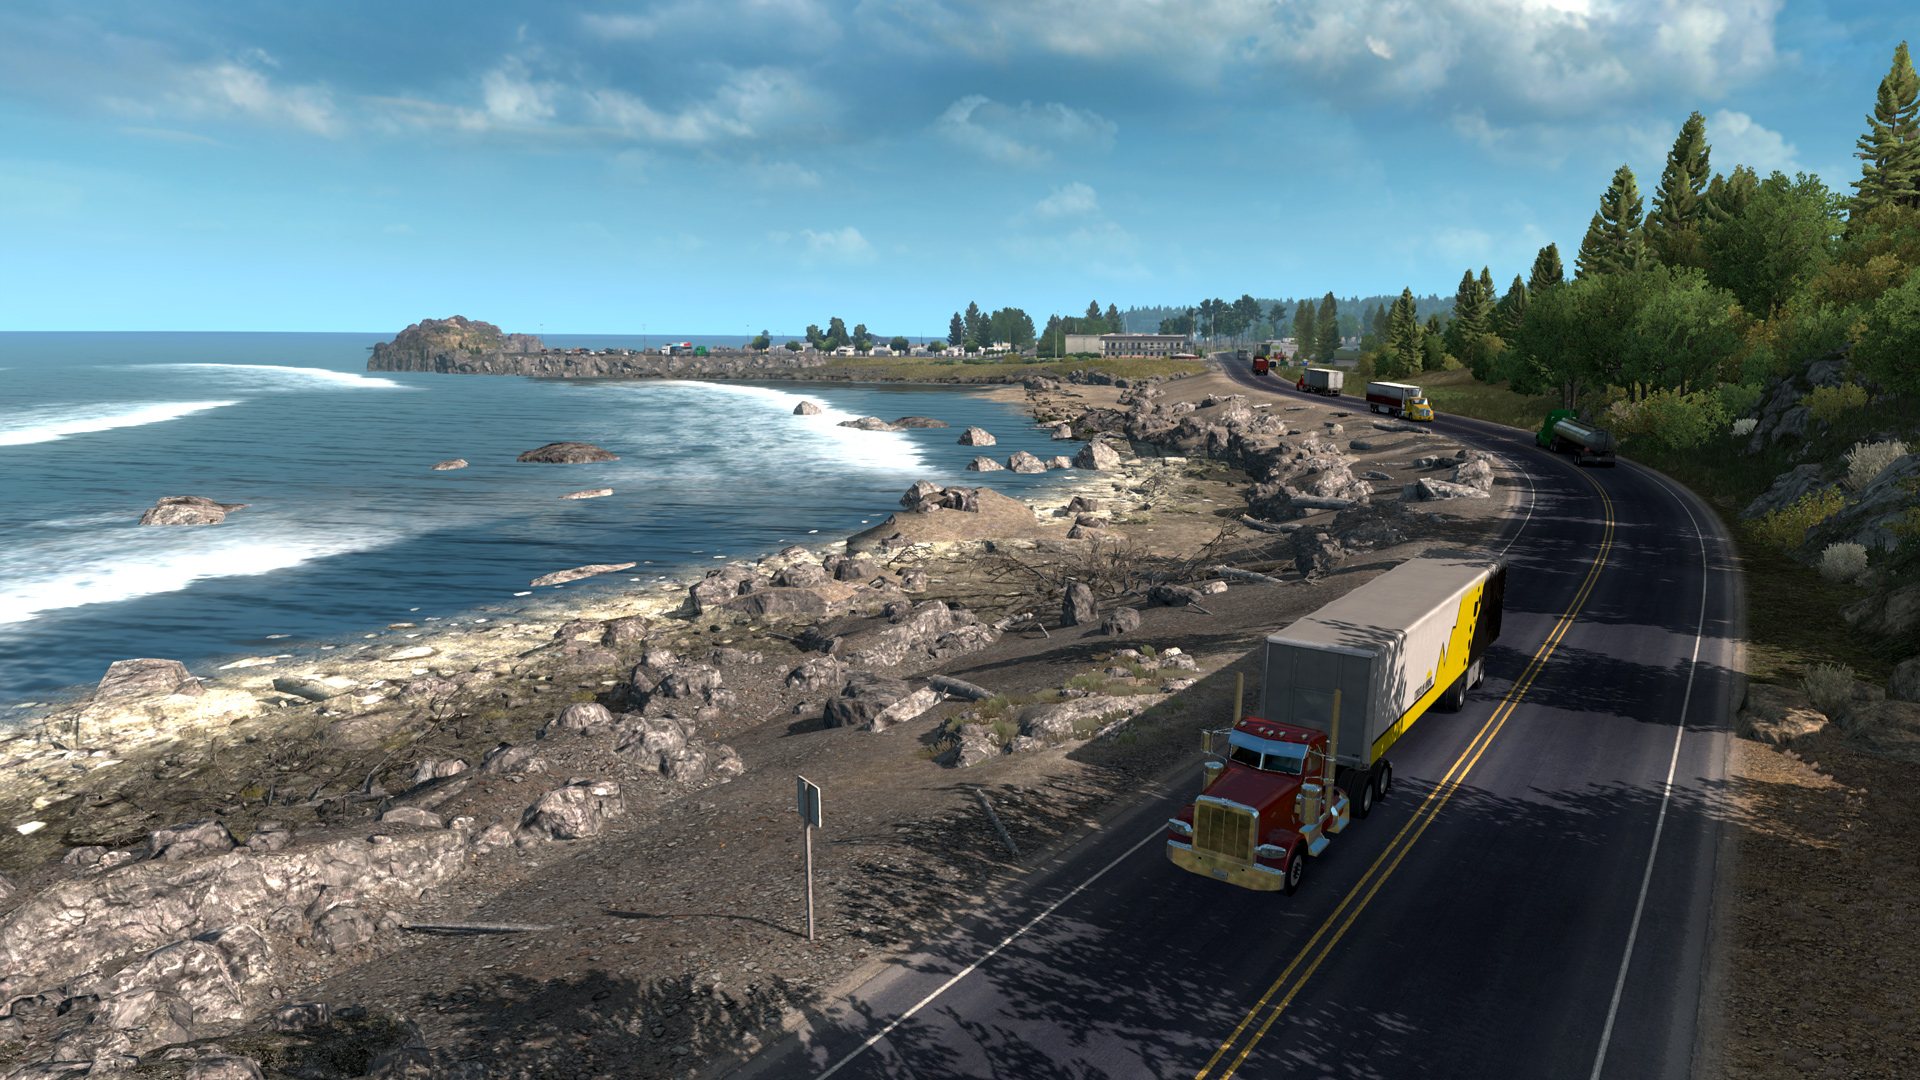 American Truck Simulator - Oregon EU Steam Altergift